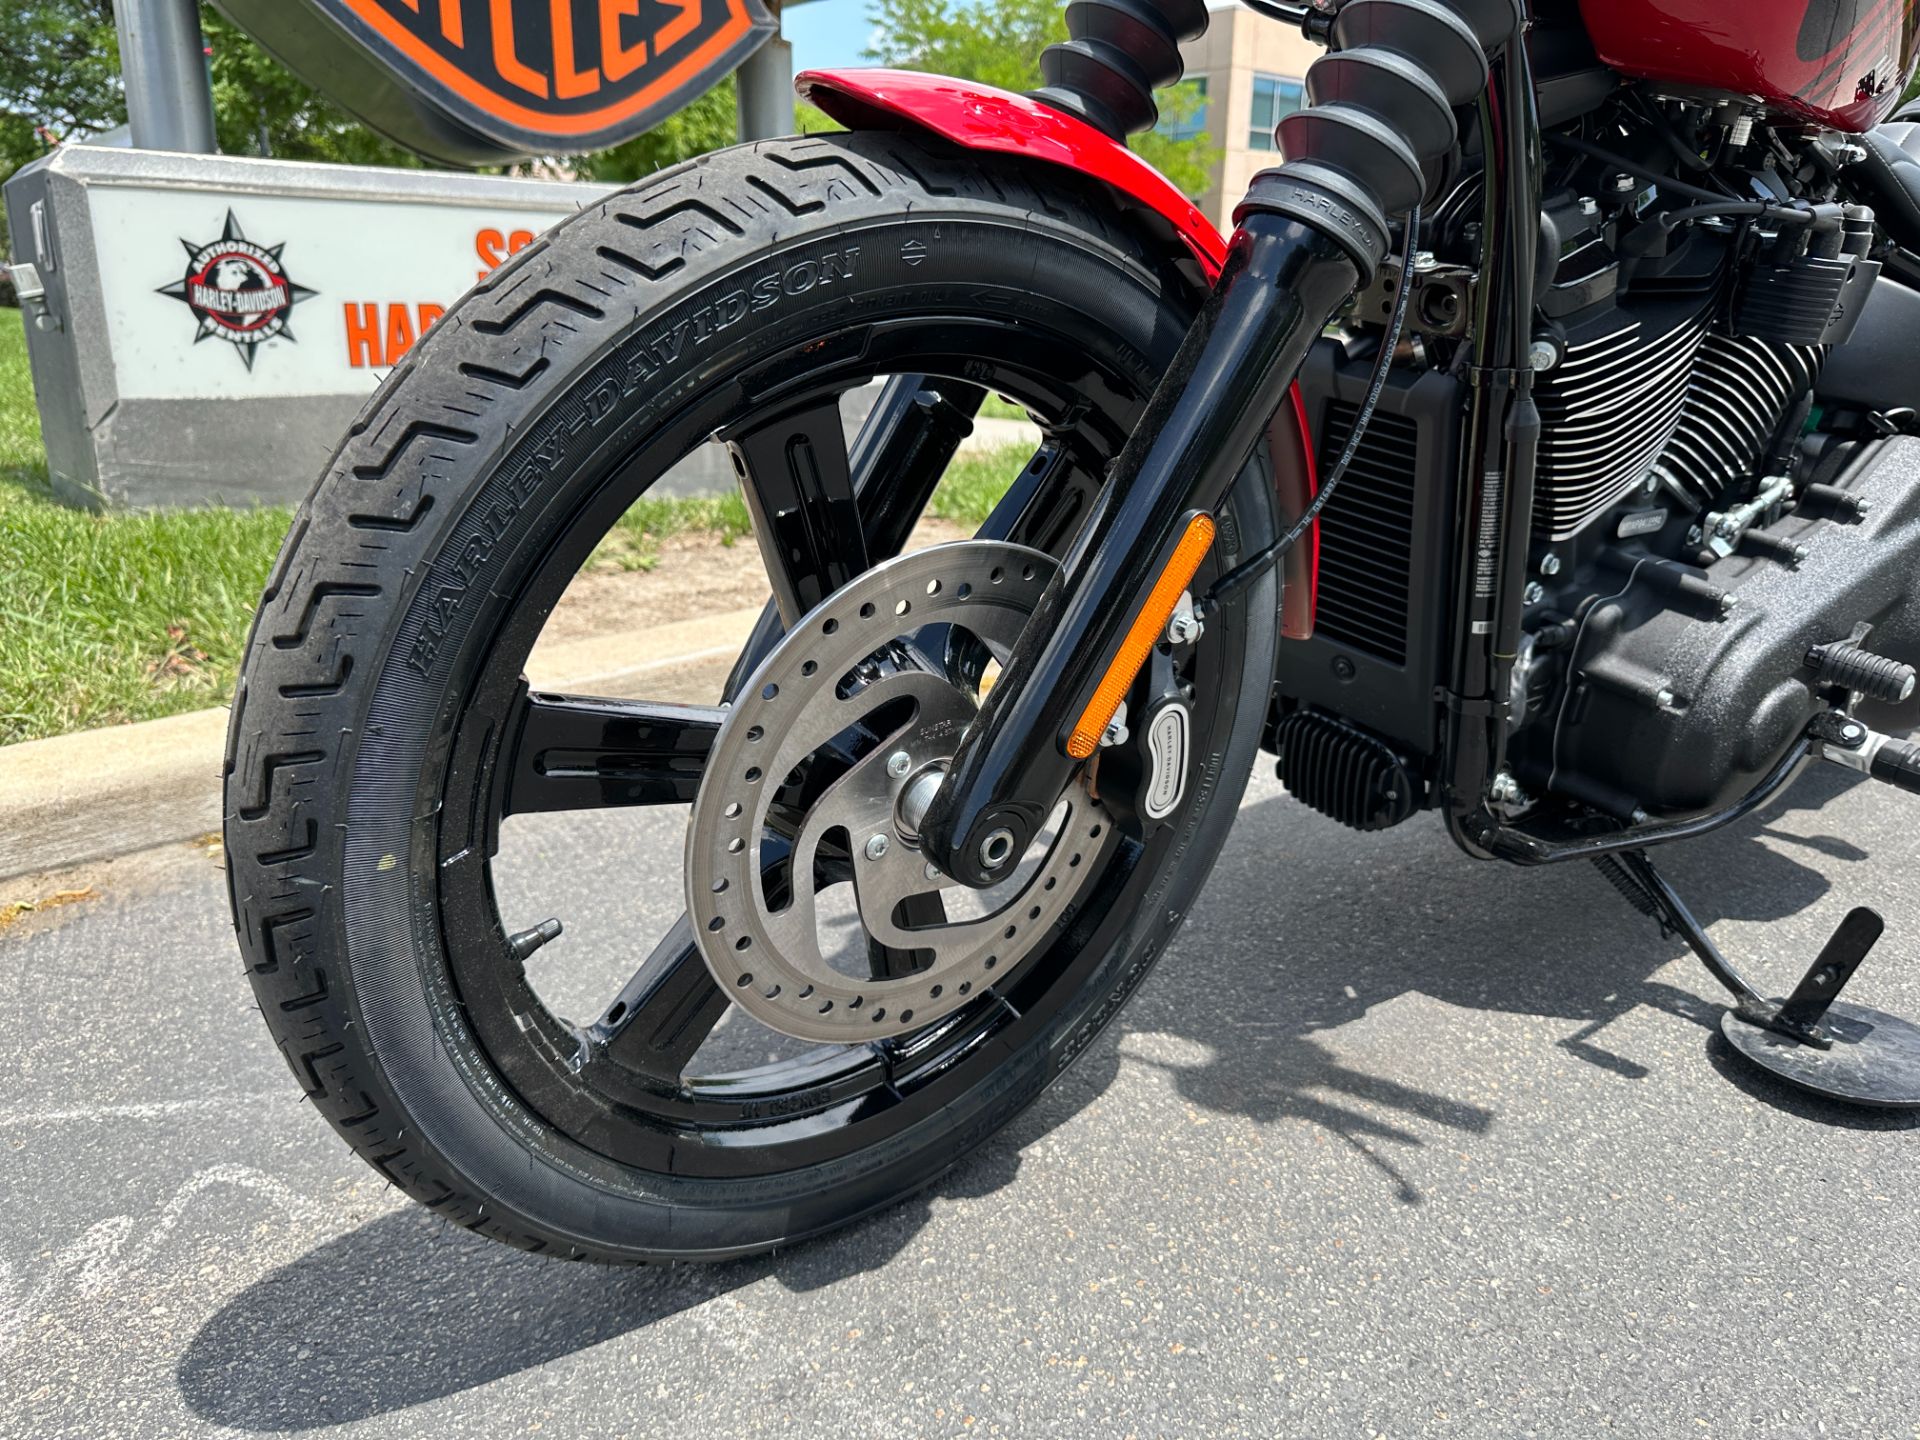 2023 Harley-Davidson Street Bob® 114 in Sandy, Utah - Photo 10